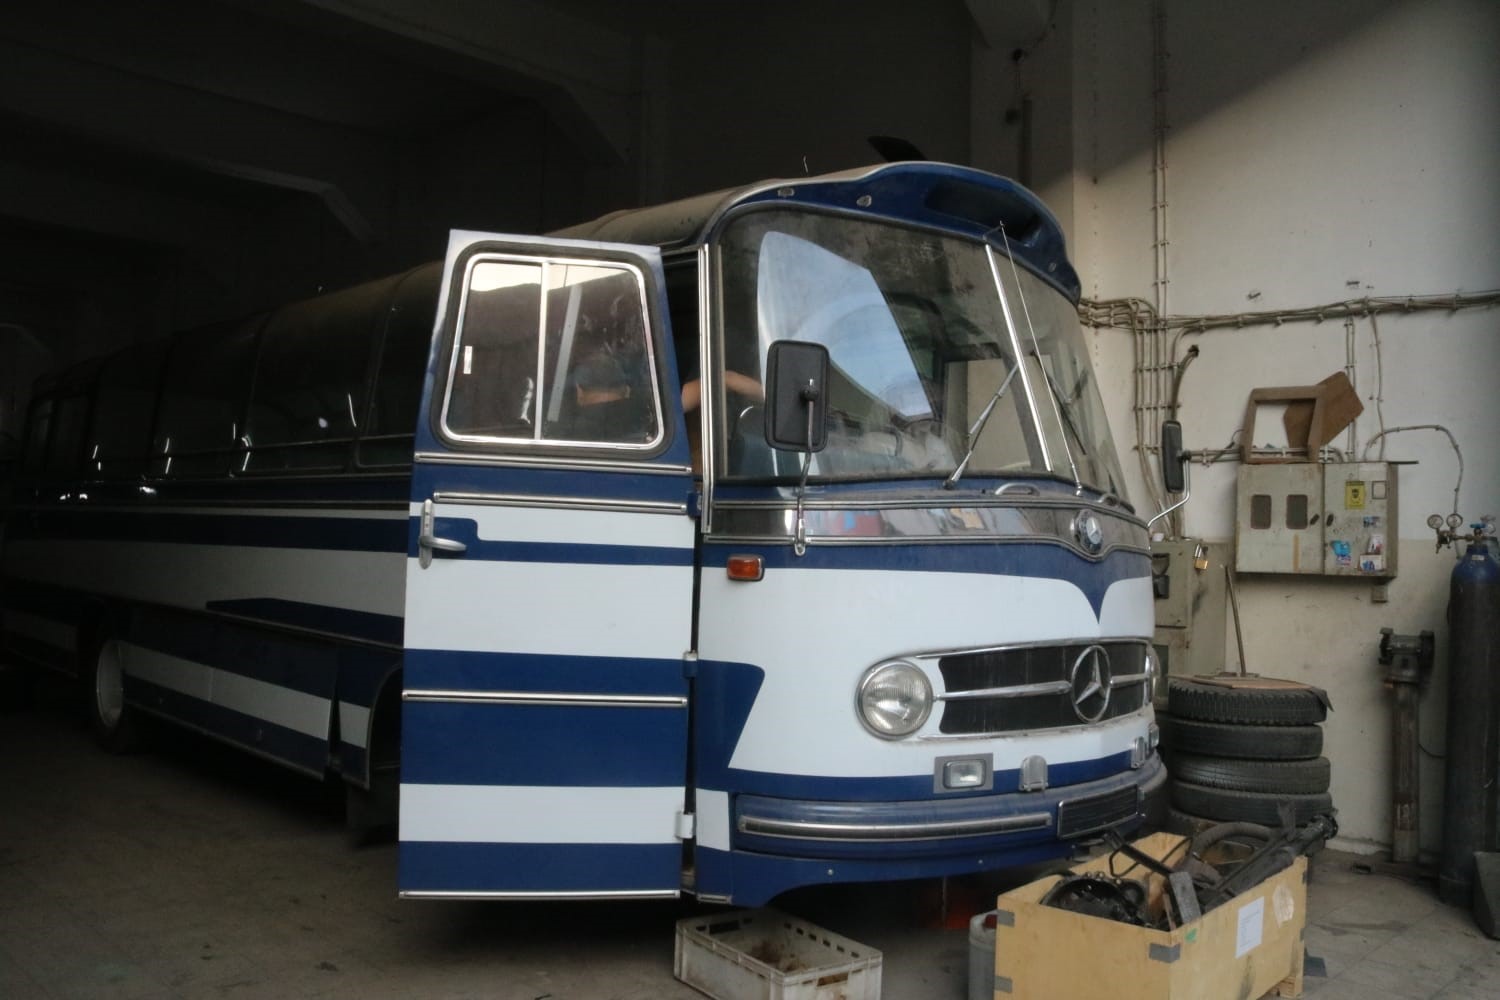 (Özel) Sanayi sitesi içerisindeki müze...90 yıllık klasik otobüsleri restore ediyorlar